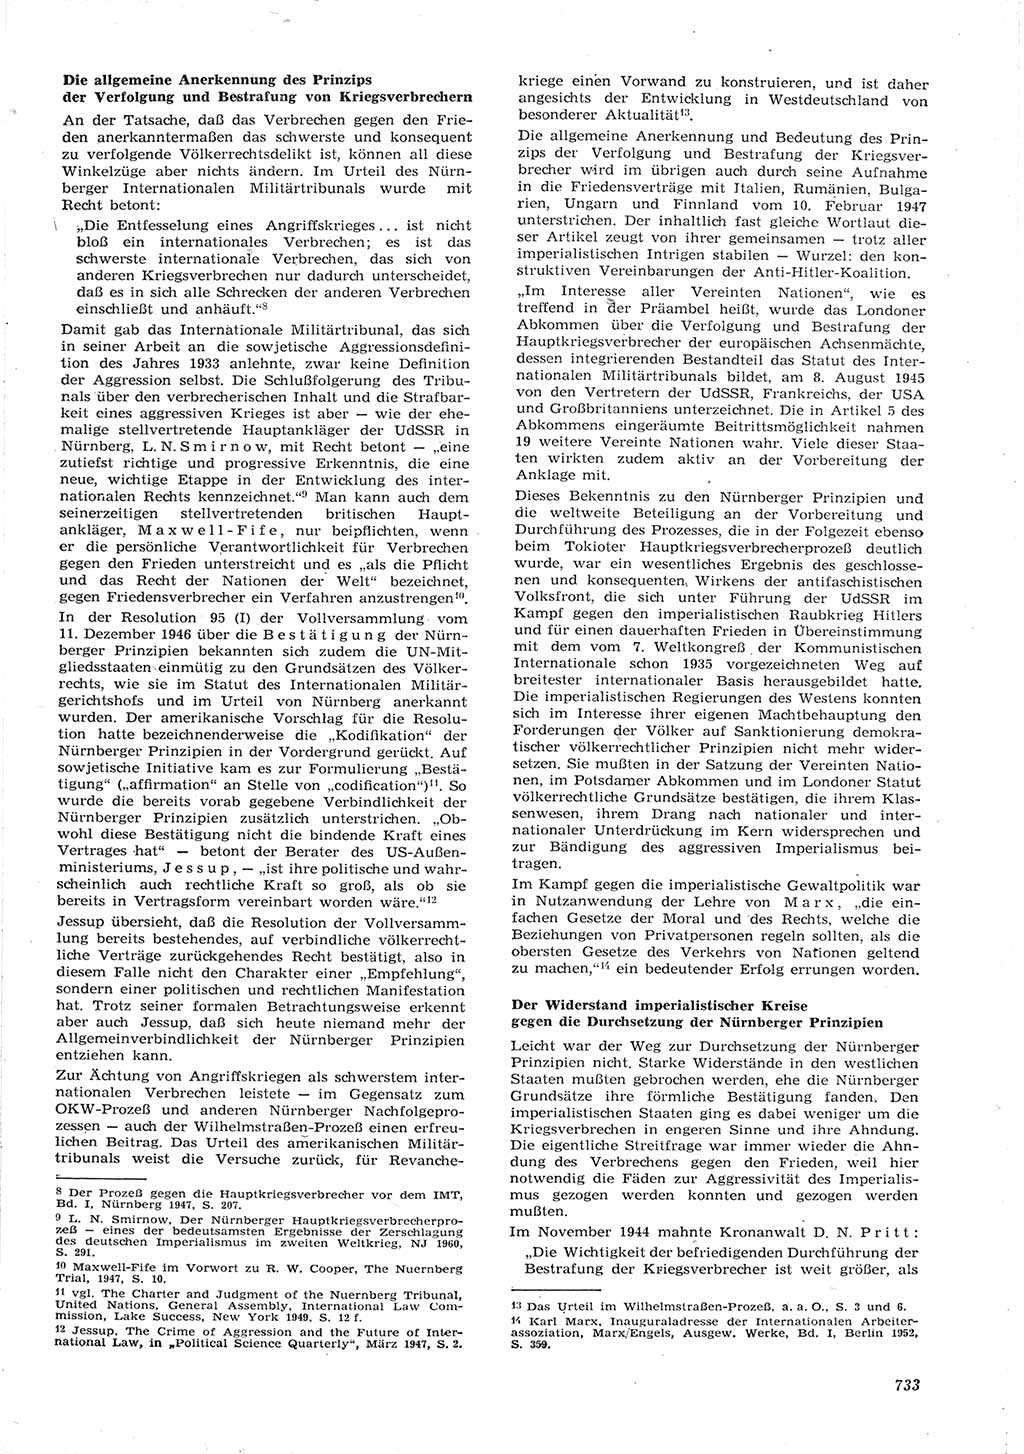 Neue Justiz (NJ), Zeitschrift für Recht und Rechtswissenschaft [Deutsche Demokratische Republik (DDR)], 15. Jahrgang 1961, Seite 733 (NJ DDR 1961, S. 733)